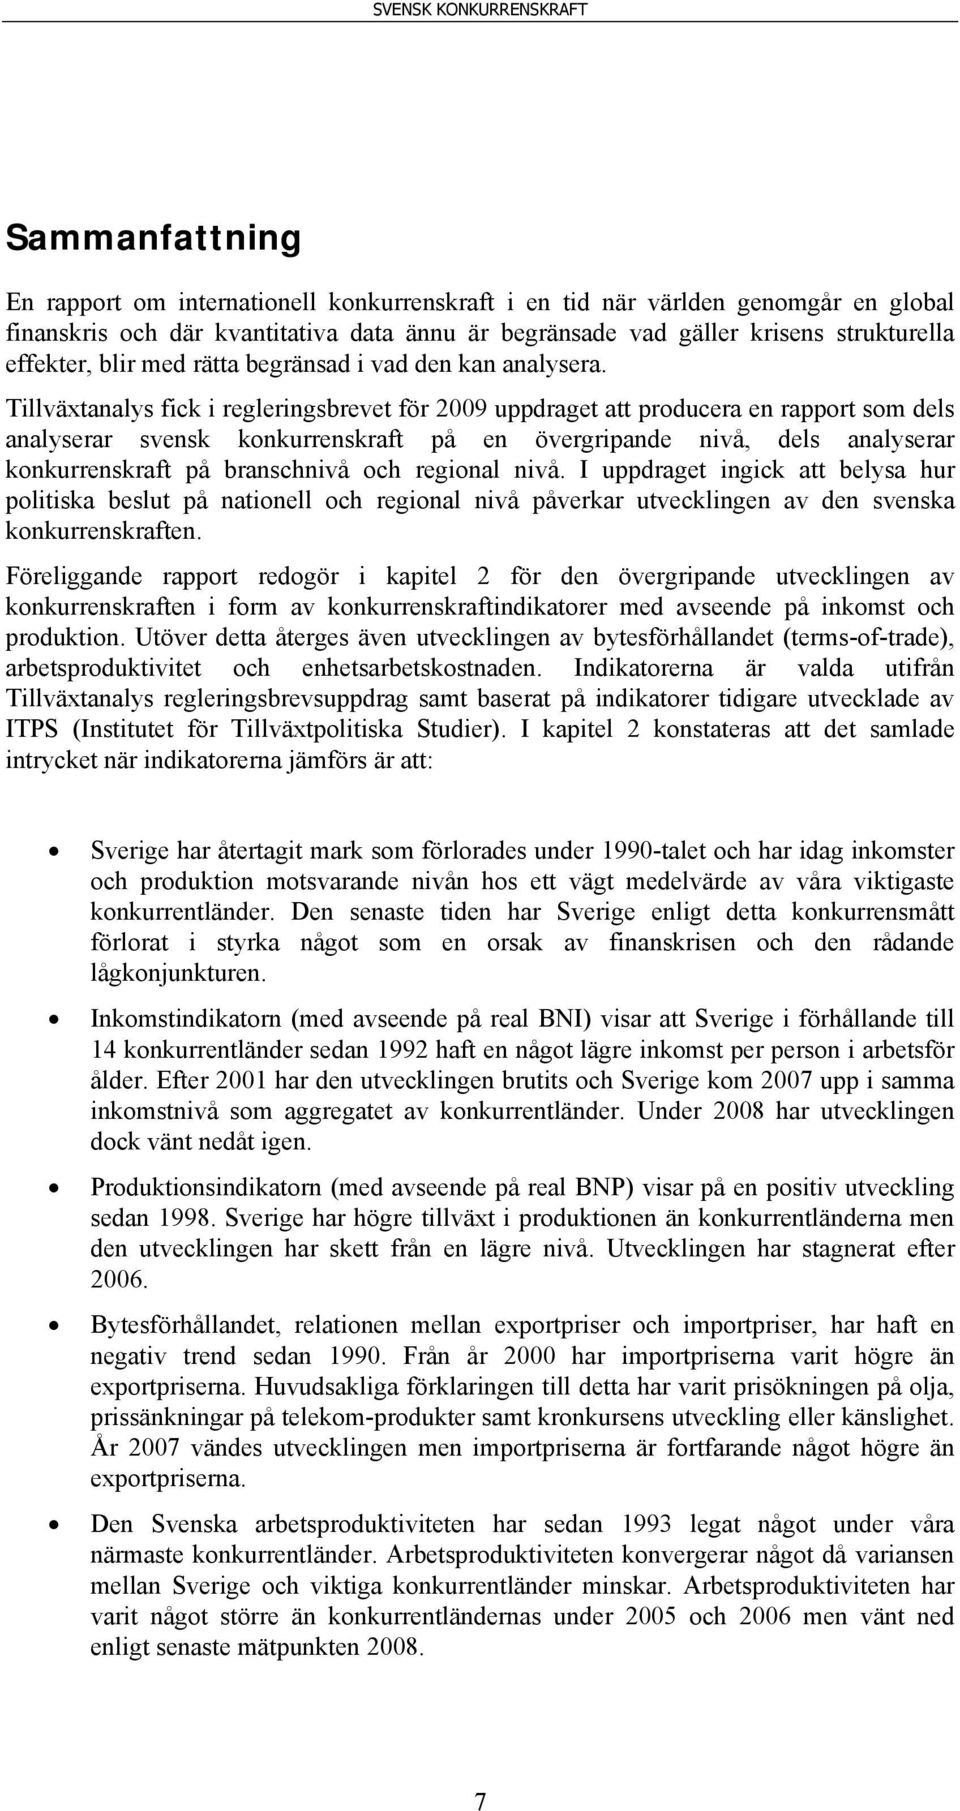 Tillväxtanalys fick i regleringsbrevet för 2009 uppdraget att producera en rapport som dels analyserar svensk konkurrenskraft på en övergripande nivå, dels analyserar konkurrenskraft på branschnivå